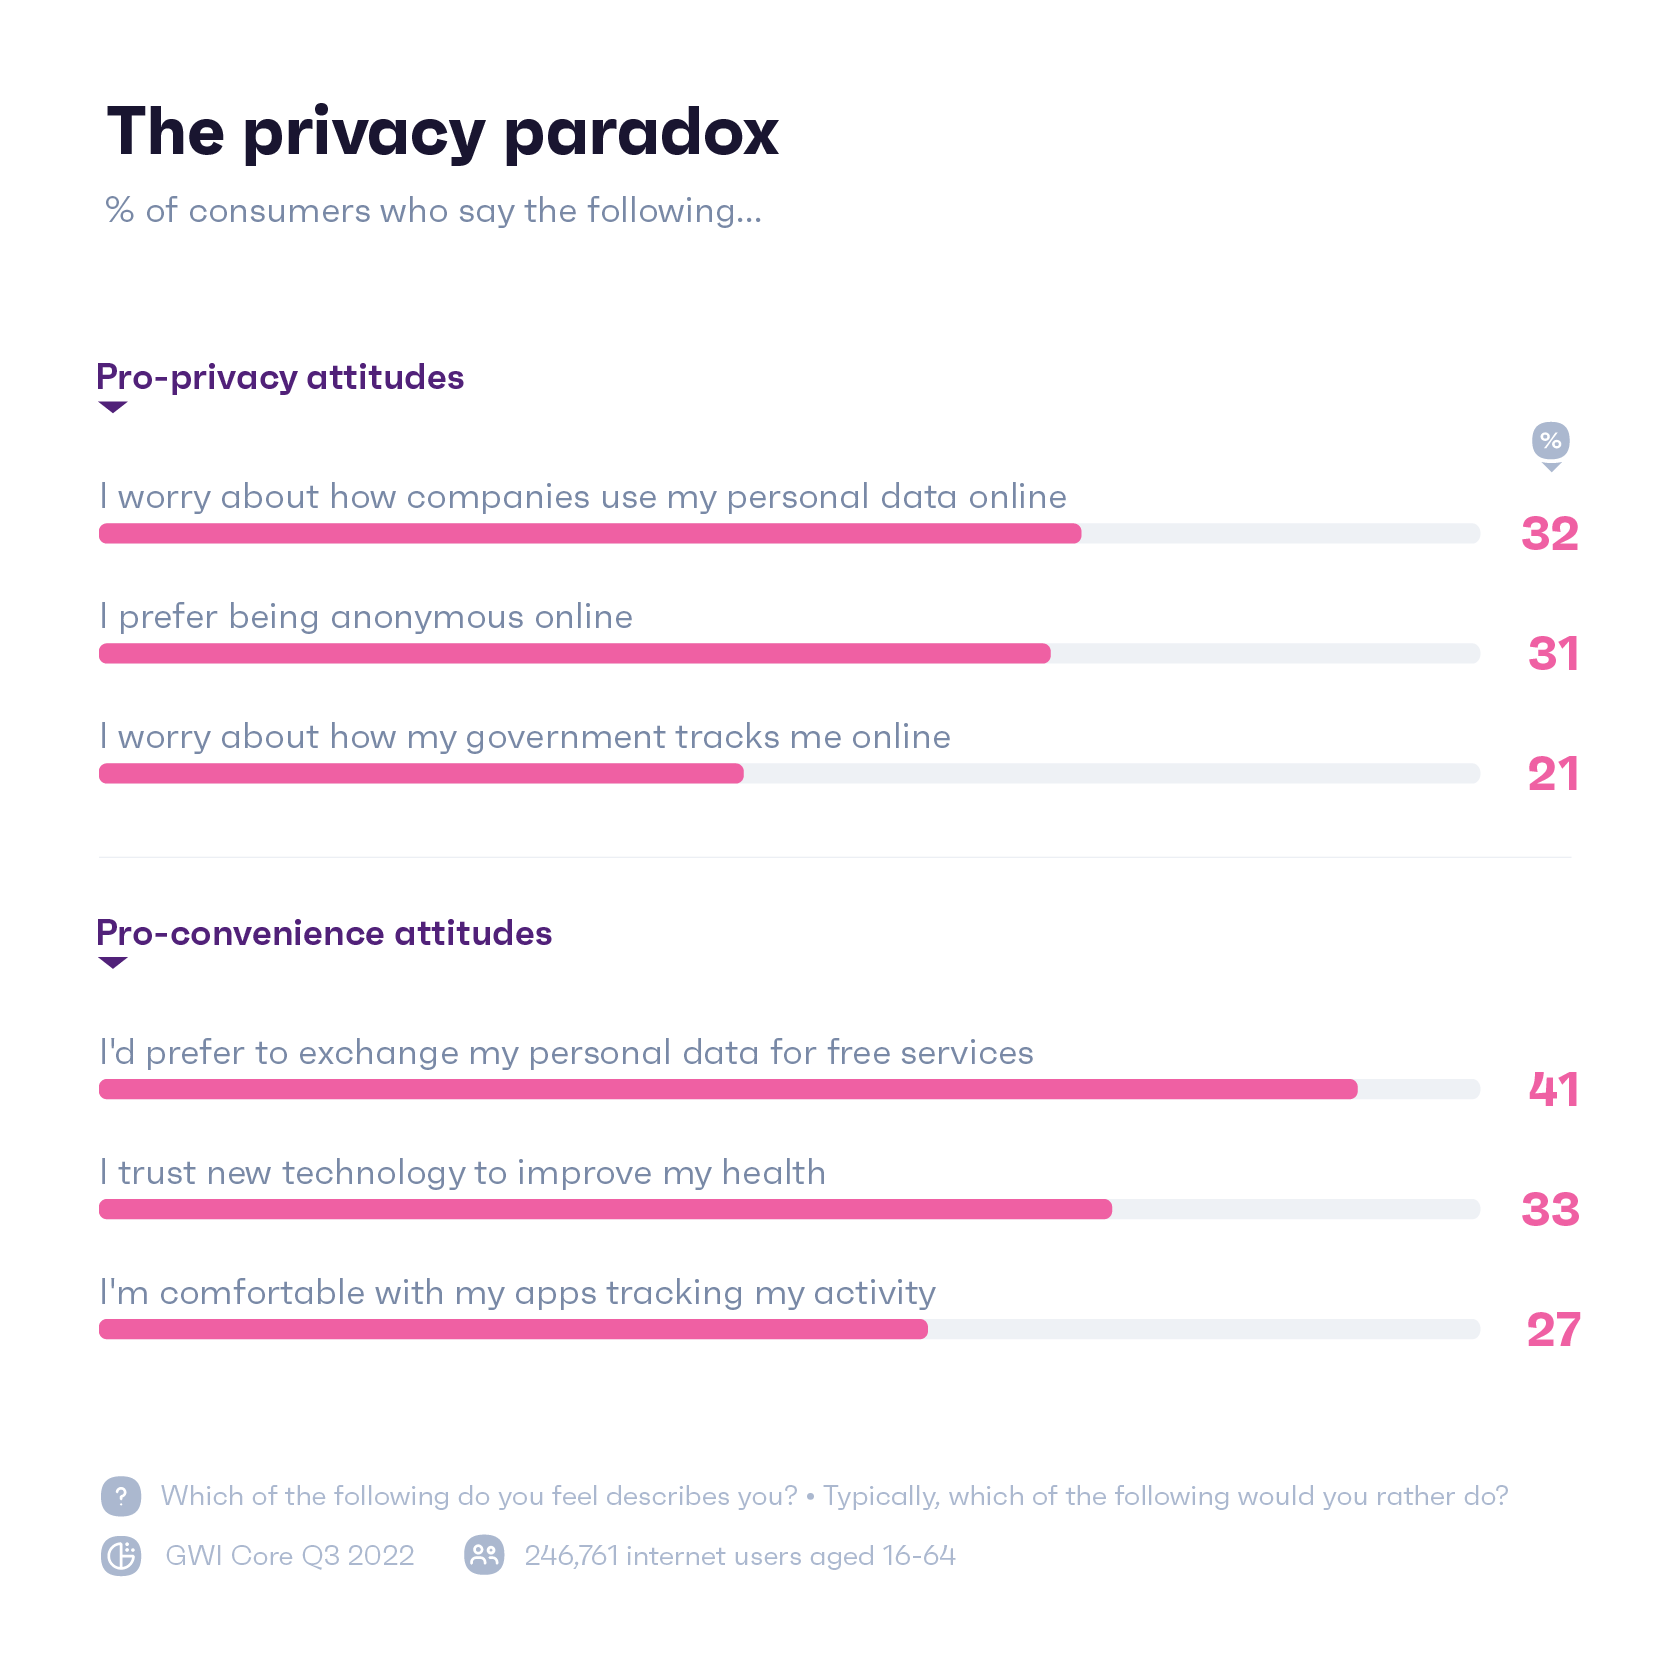 사람들이 온라인 개인 정보 보호 조치에 대해 어떻게 느끼는지 보여주는 차트